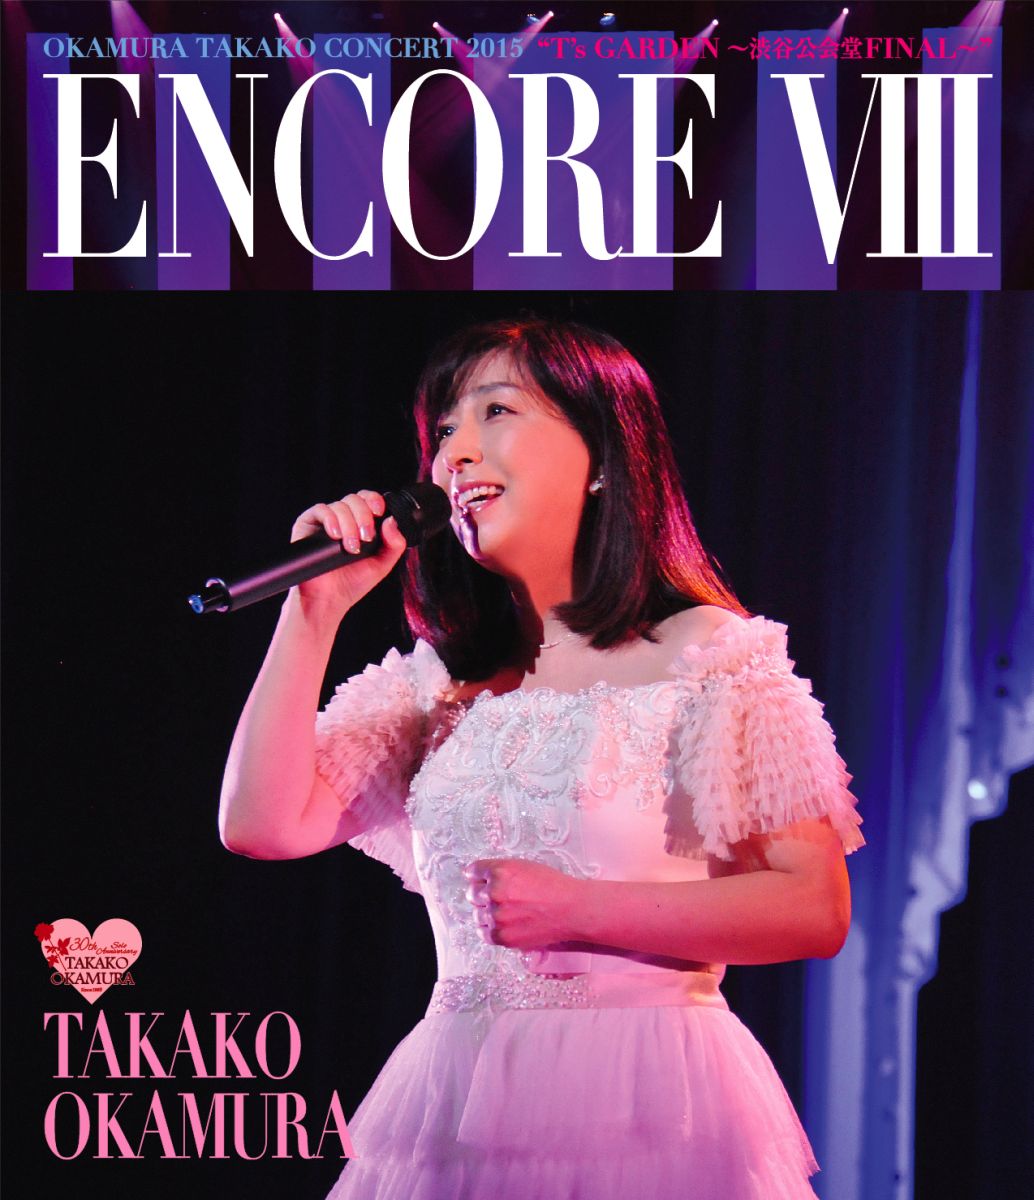 楽天ブックス: ENCORE VIII OKAMURA TAKAKO CONCERT 2015 “T's GARDEN 